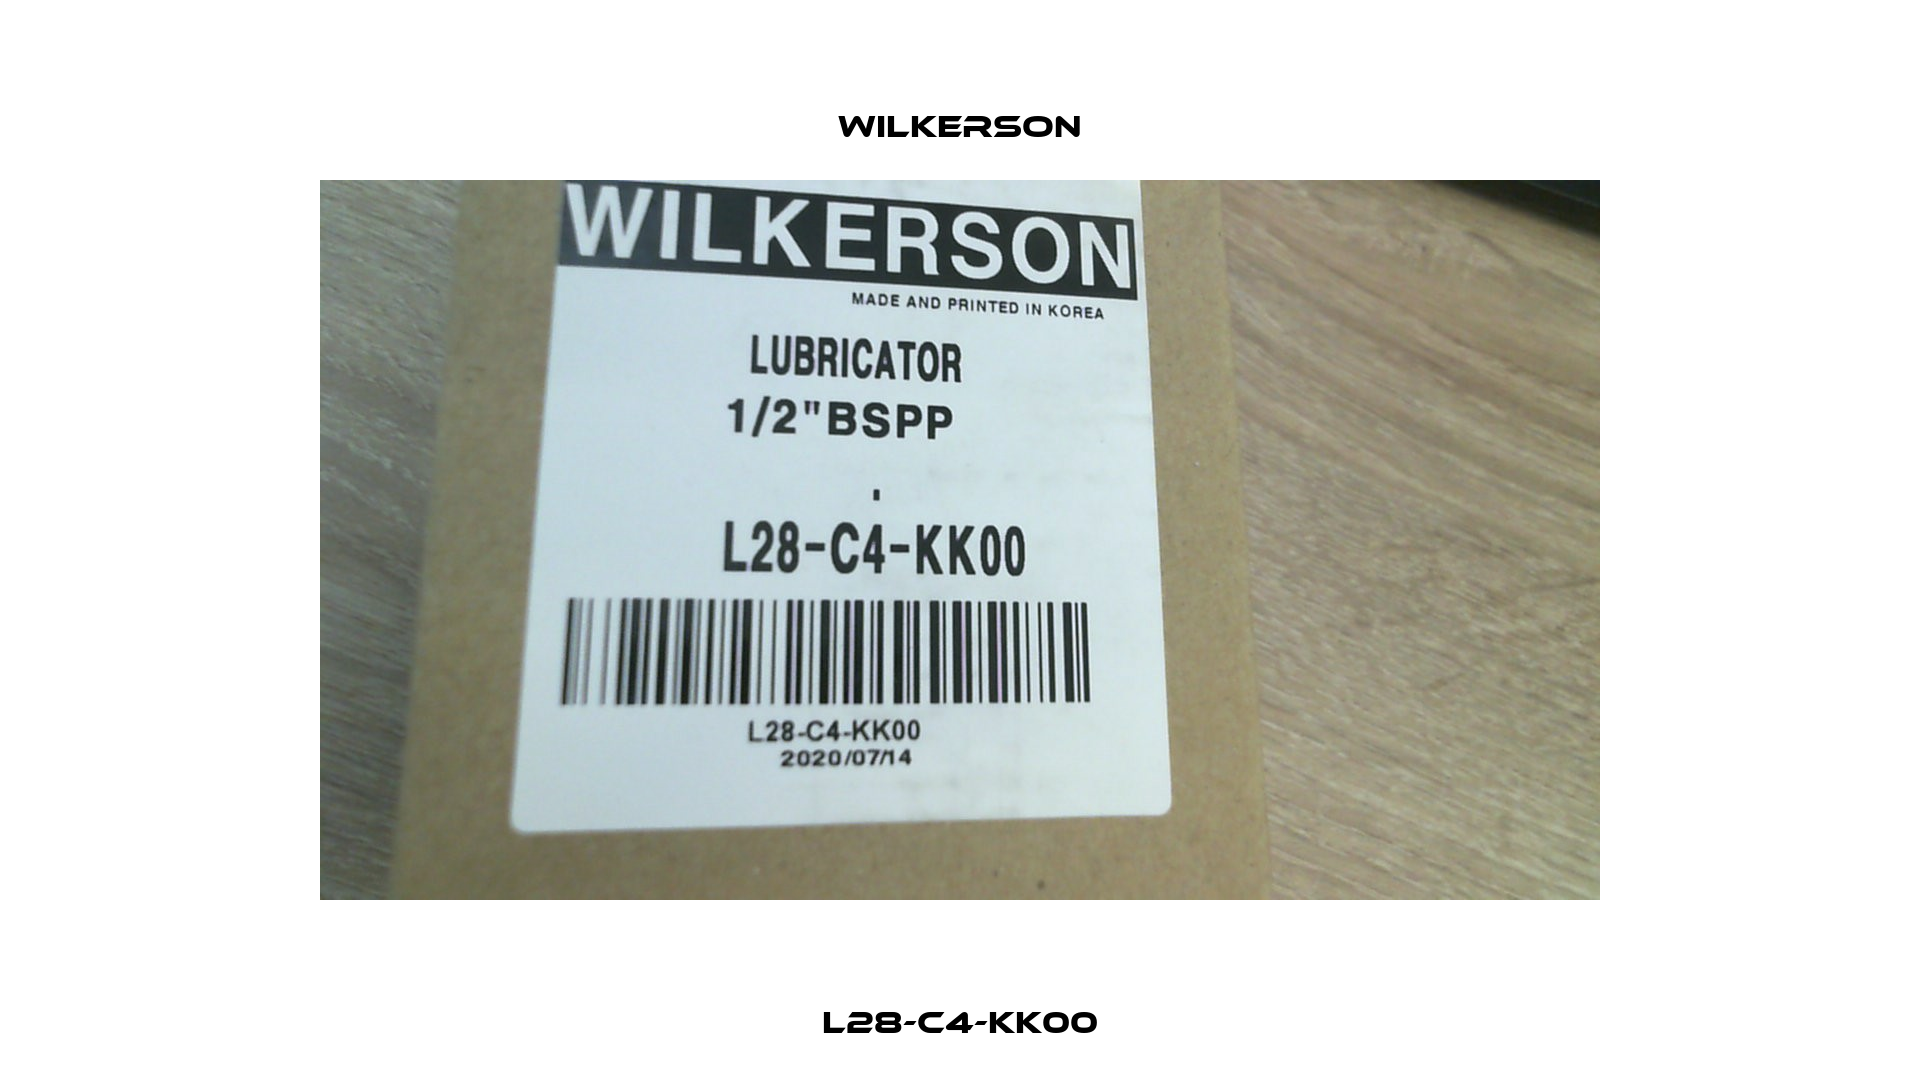 L28-C4-KK00 Wilkerson